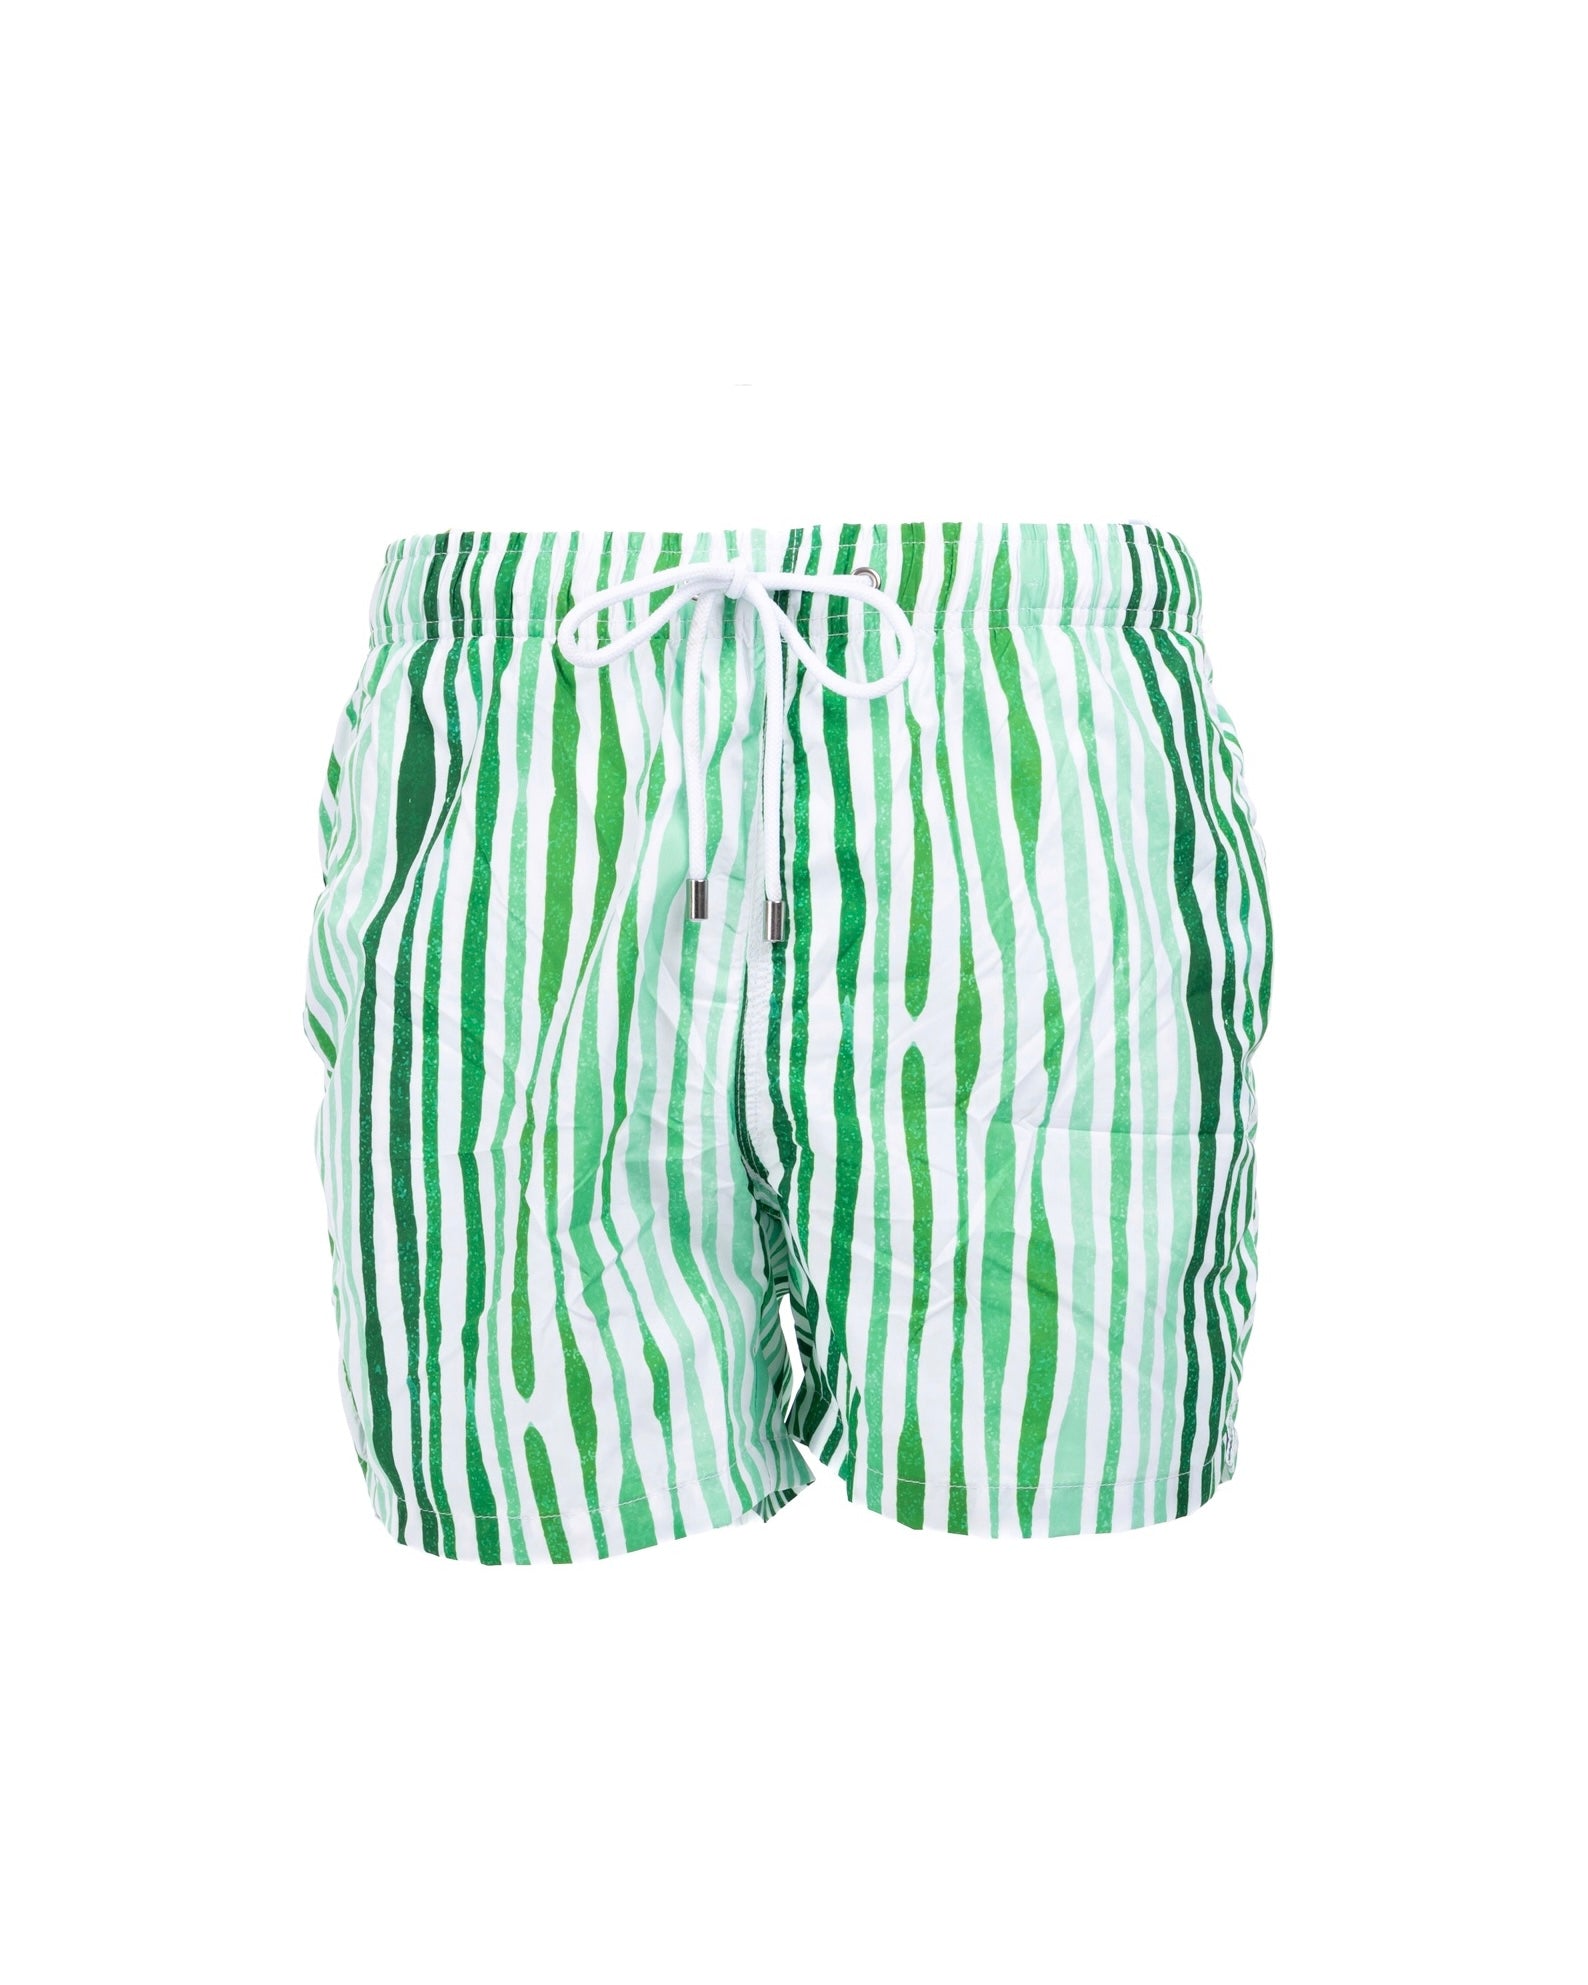 Stripe - green patterned swimsuit